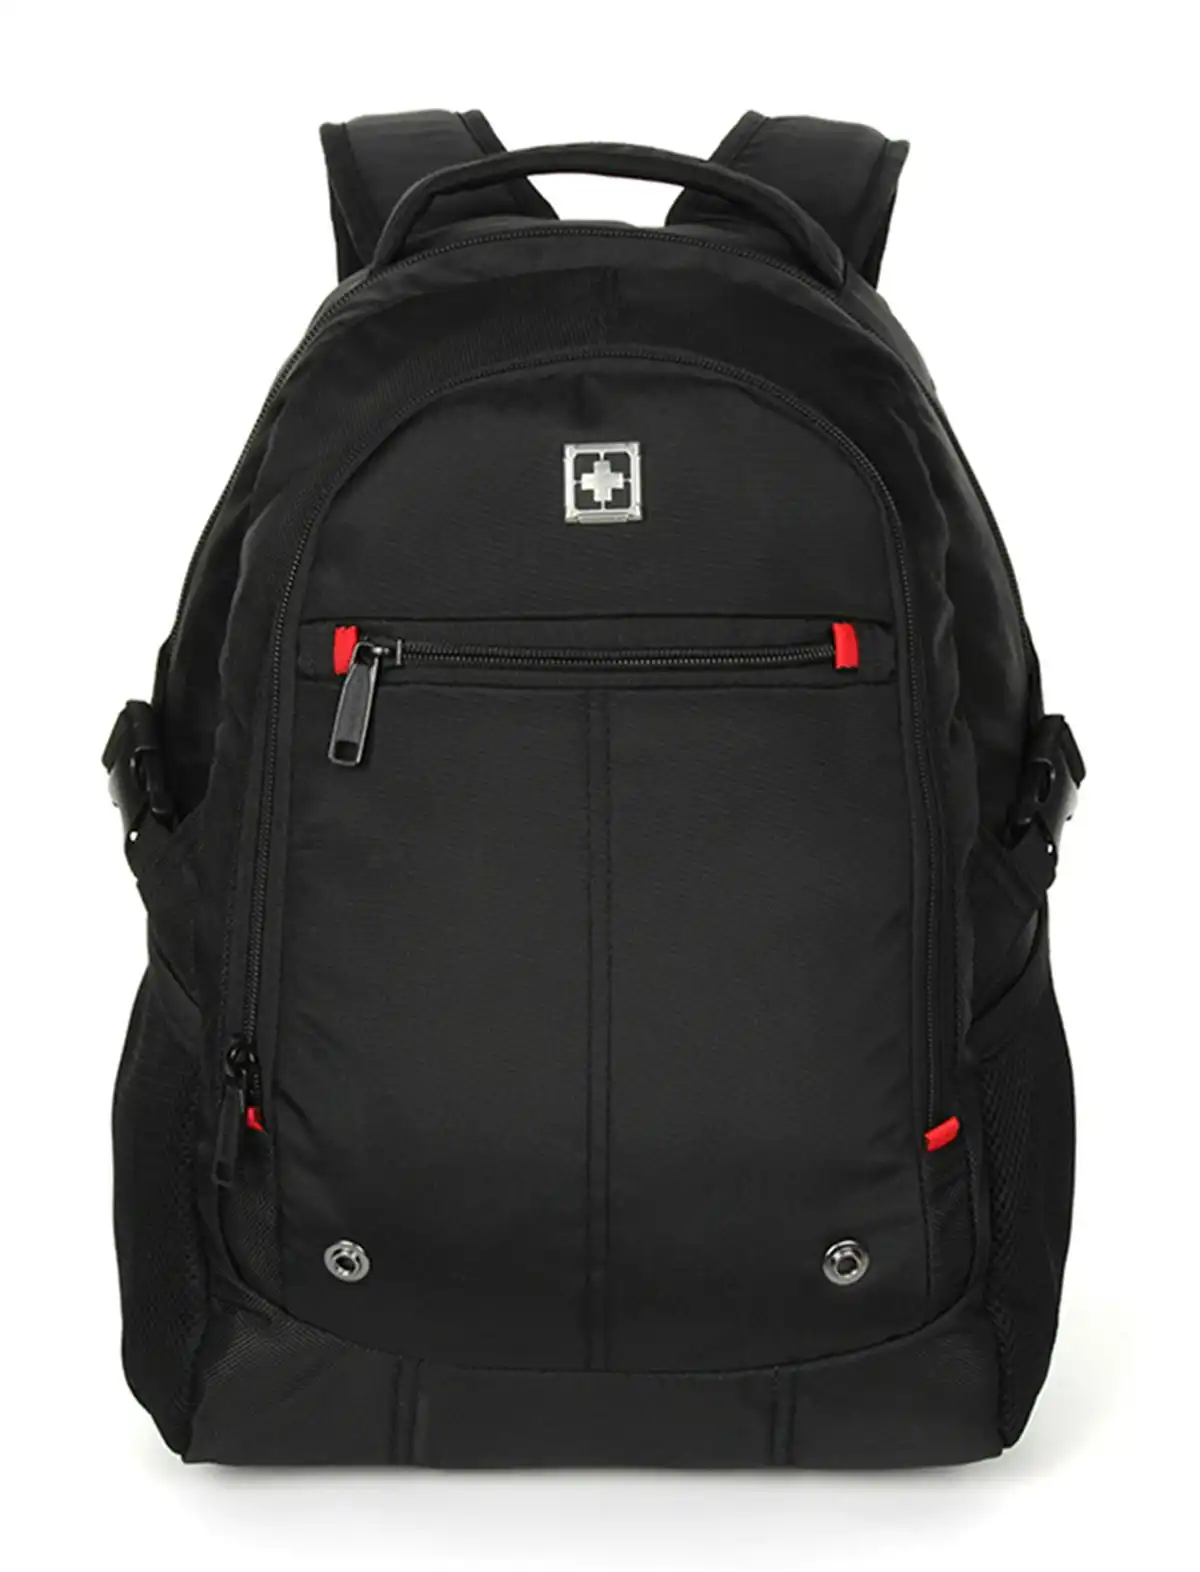 Swisswin Swiss waterproof 15.6" laptop Backpack School backpack Travel Backpack SW1871 Black